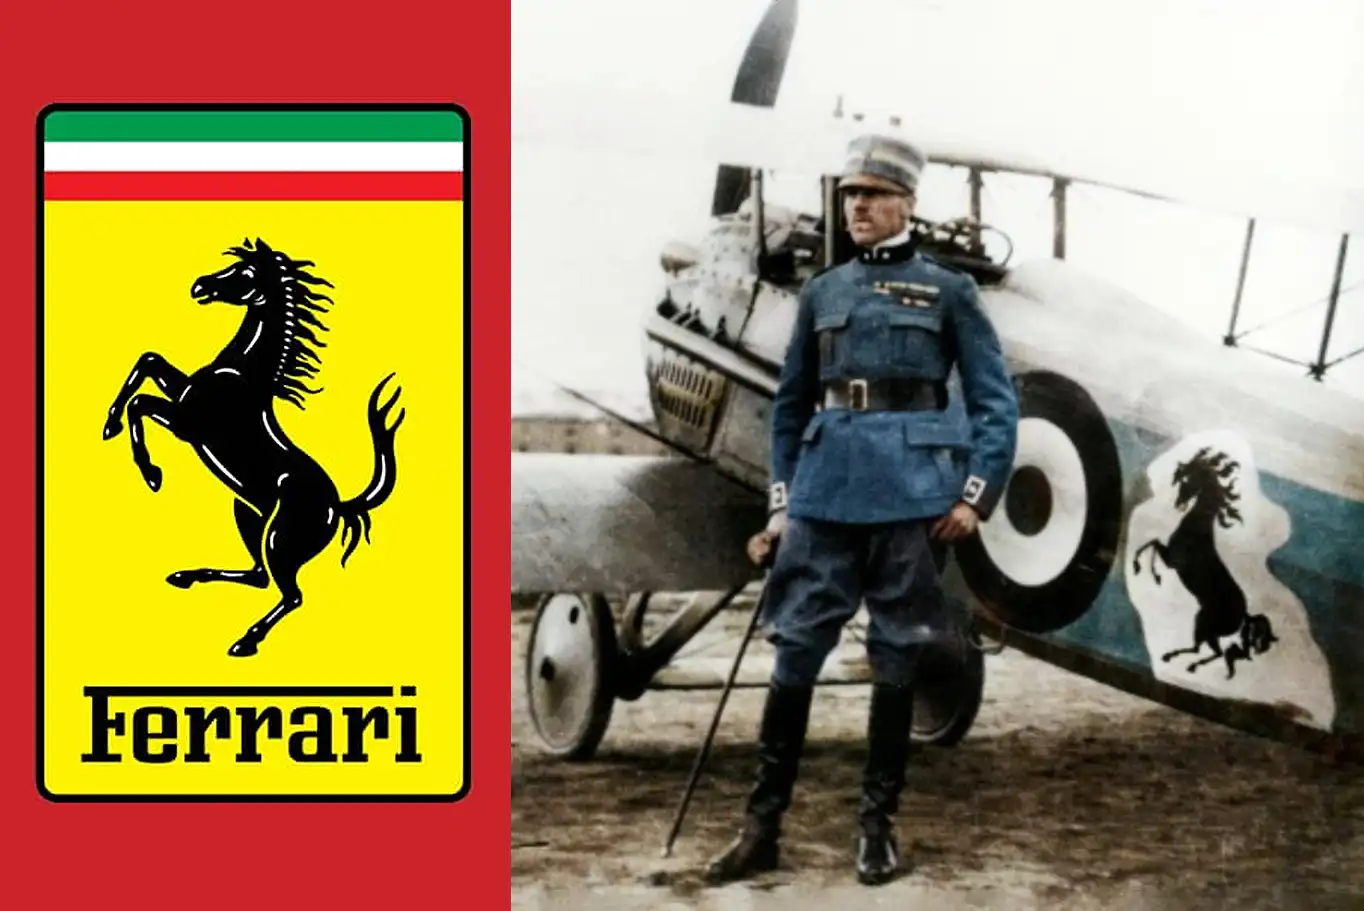 Il logo Ferrari, noto anche come "Cavallino Rampante", è stato creato nel 1923 dal pilota di aerei Francesco Baracca